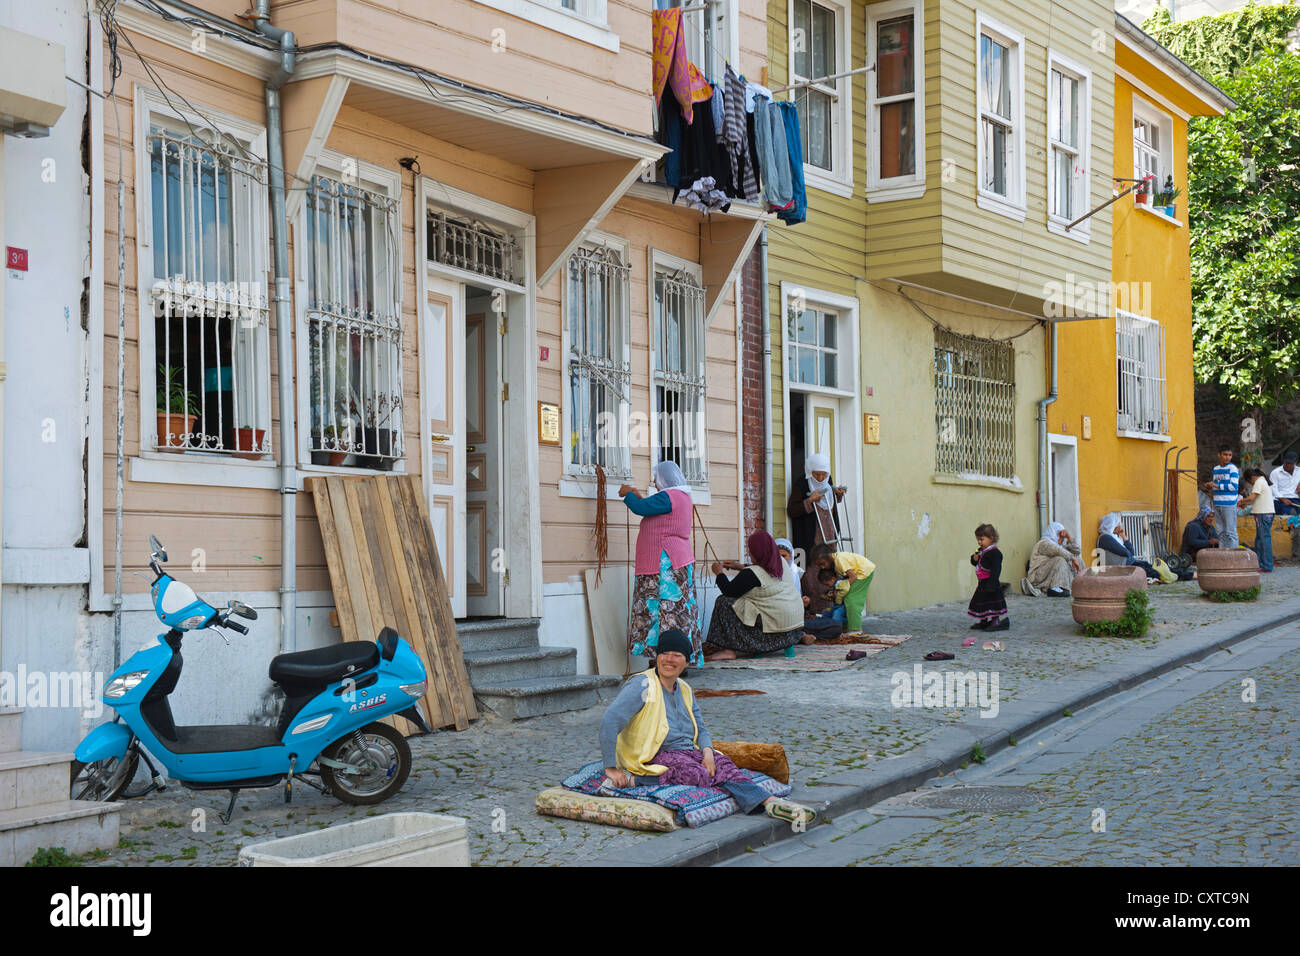 Türkei, Istanbul, Zeyrek-Viertel, Strassenszene mit antiken Holzhäusern Stock Photo